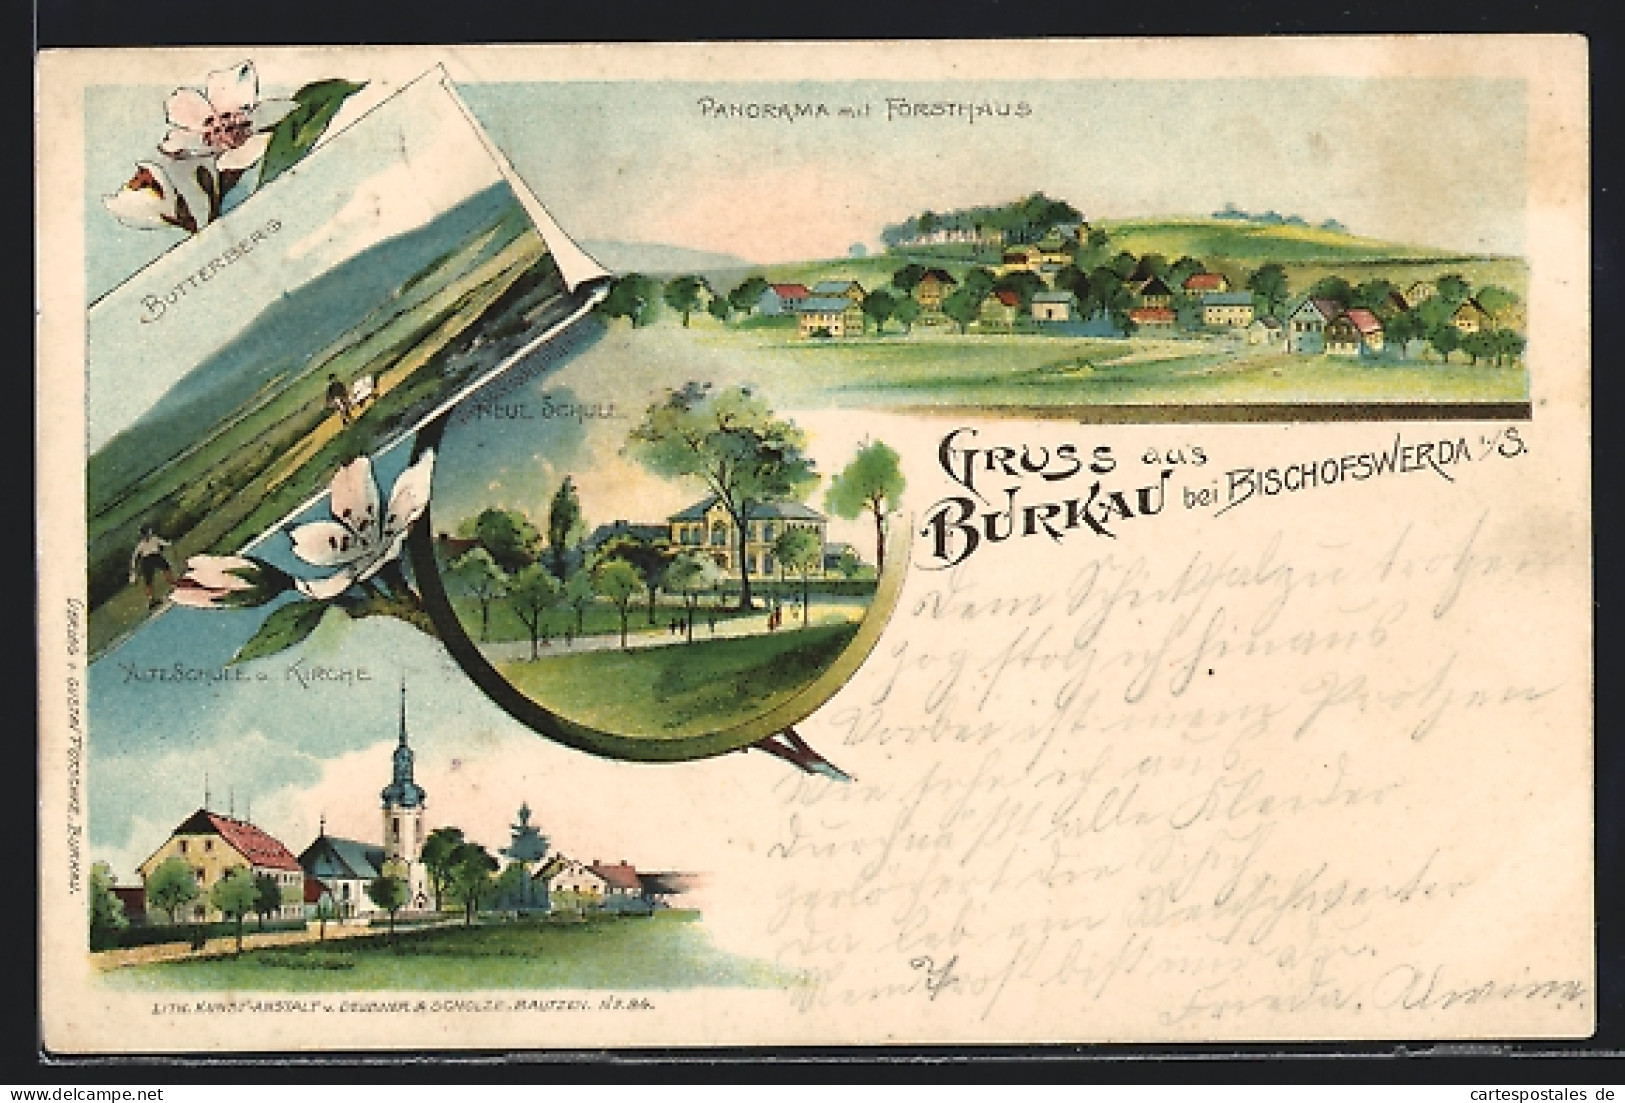 Lithographie Burkau Bei Bischofswerda, Alte Schule U. Kirche, Butterberg, Panorama Mit Forsthaus  - Jagd